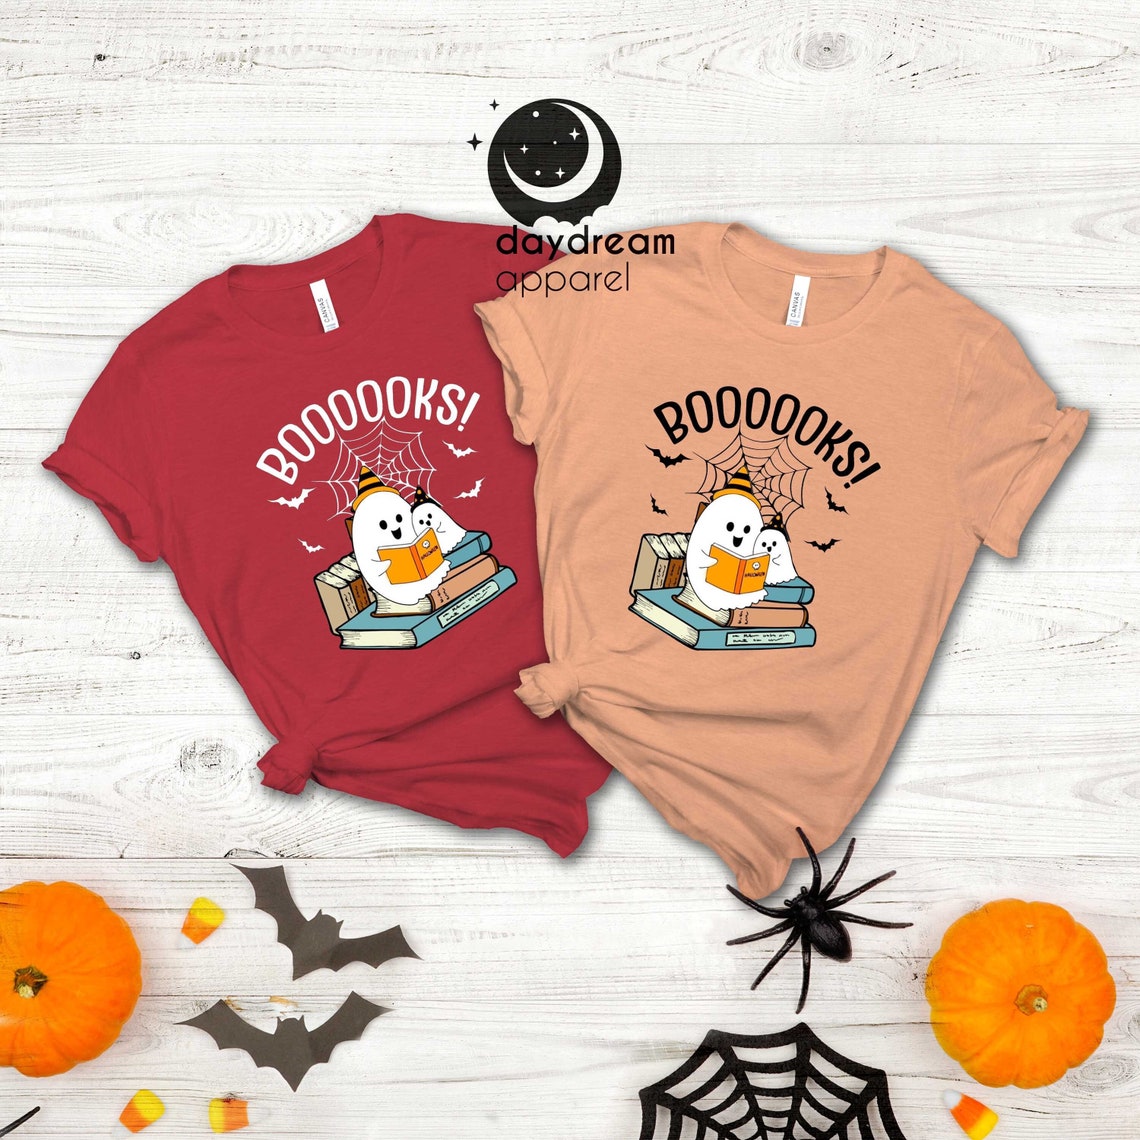 Halloween Boooooks! T-Shirt, Ghost Books Shirt, Halloween Ghost Shirt, Librarian Shirt, Book Lover Shirt, Halloween Party Teacher Shirt